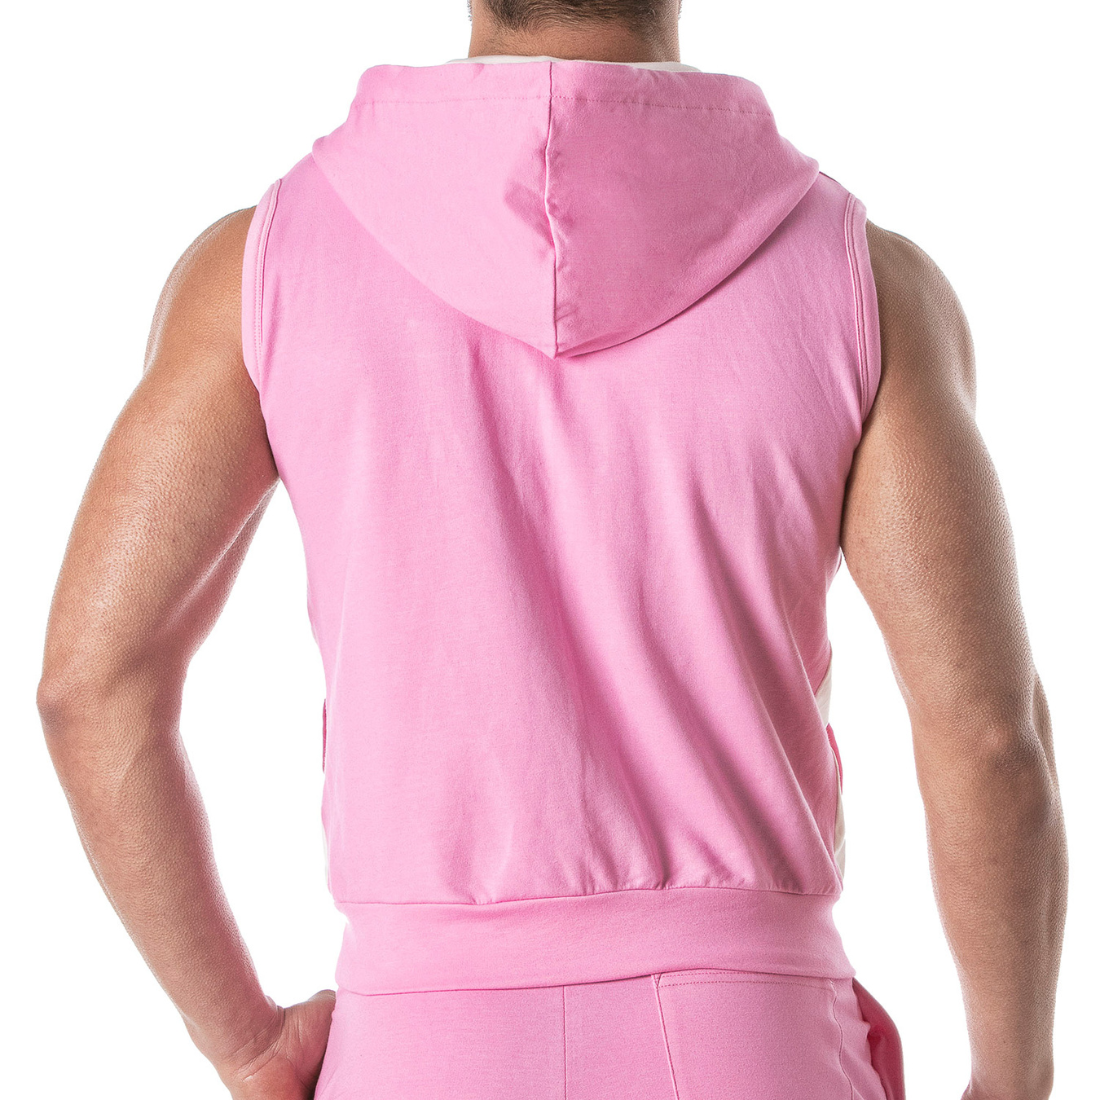 Sexy roze armloze hoodie, ontworpen door Tof Paris! Te koop bij Flavourez.